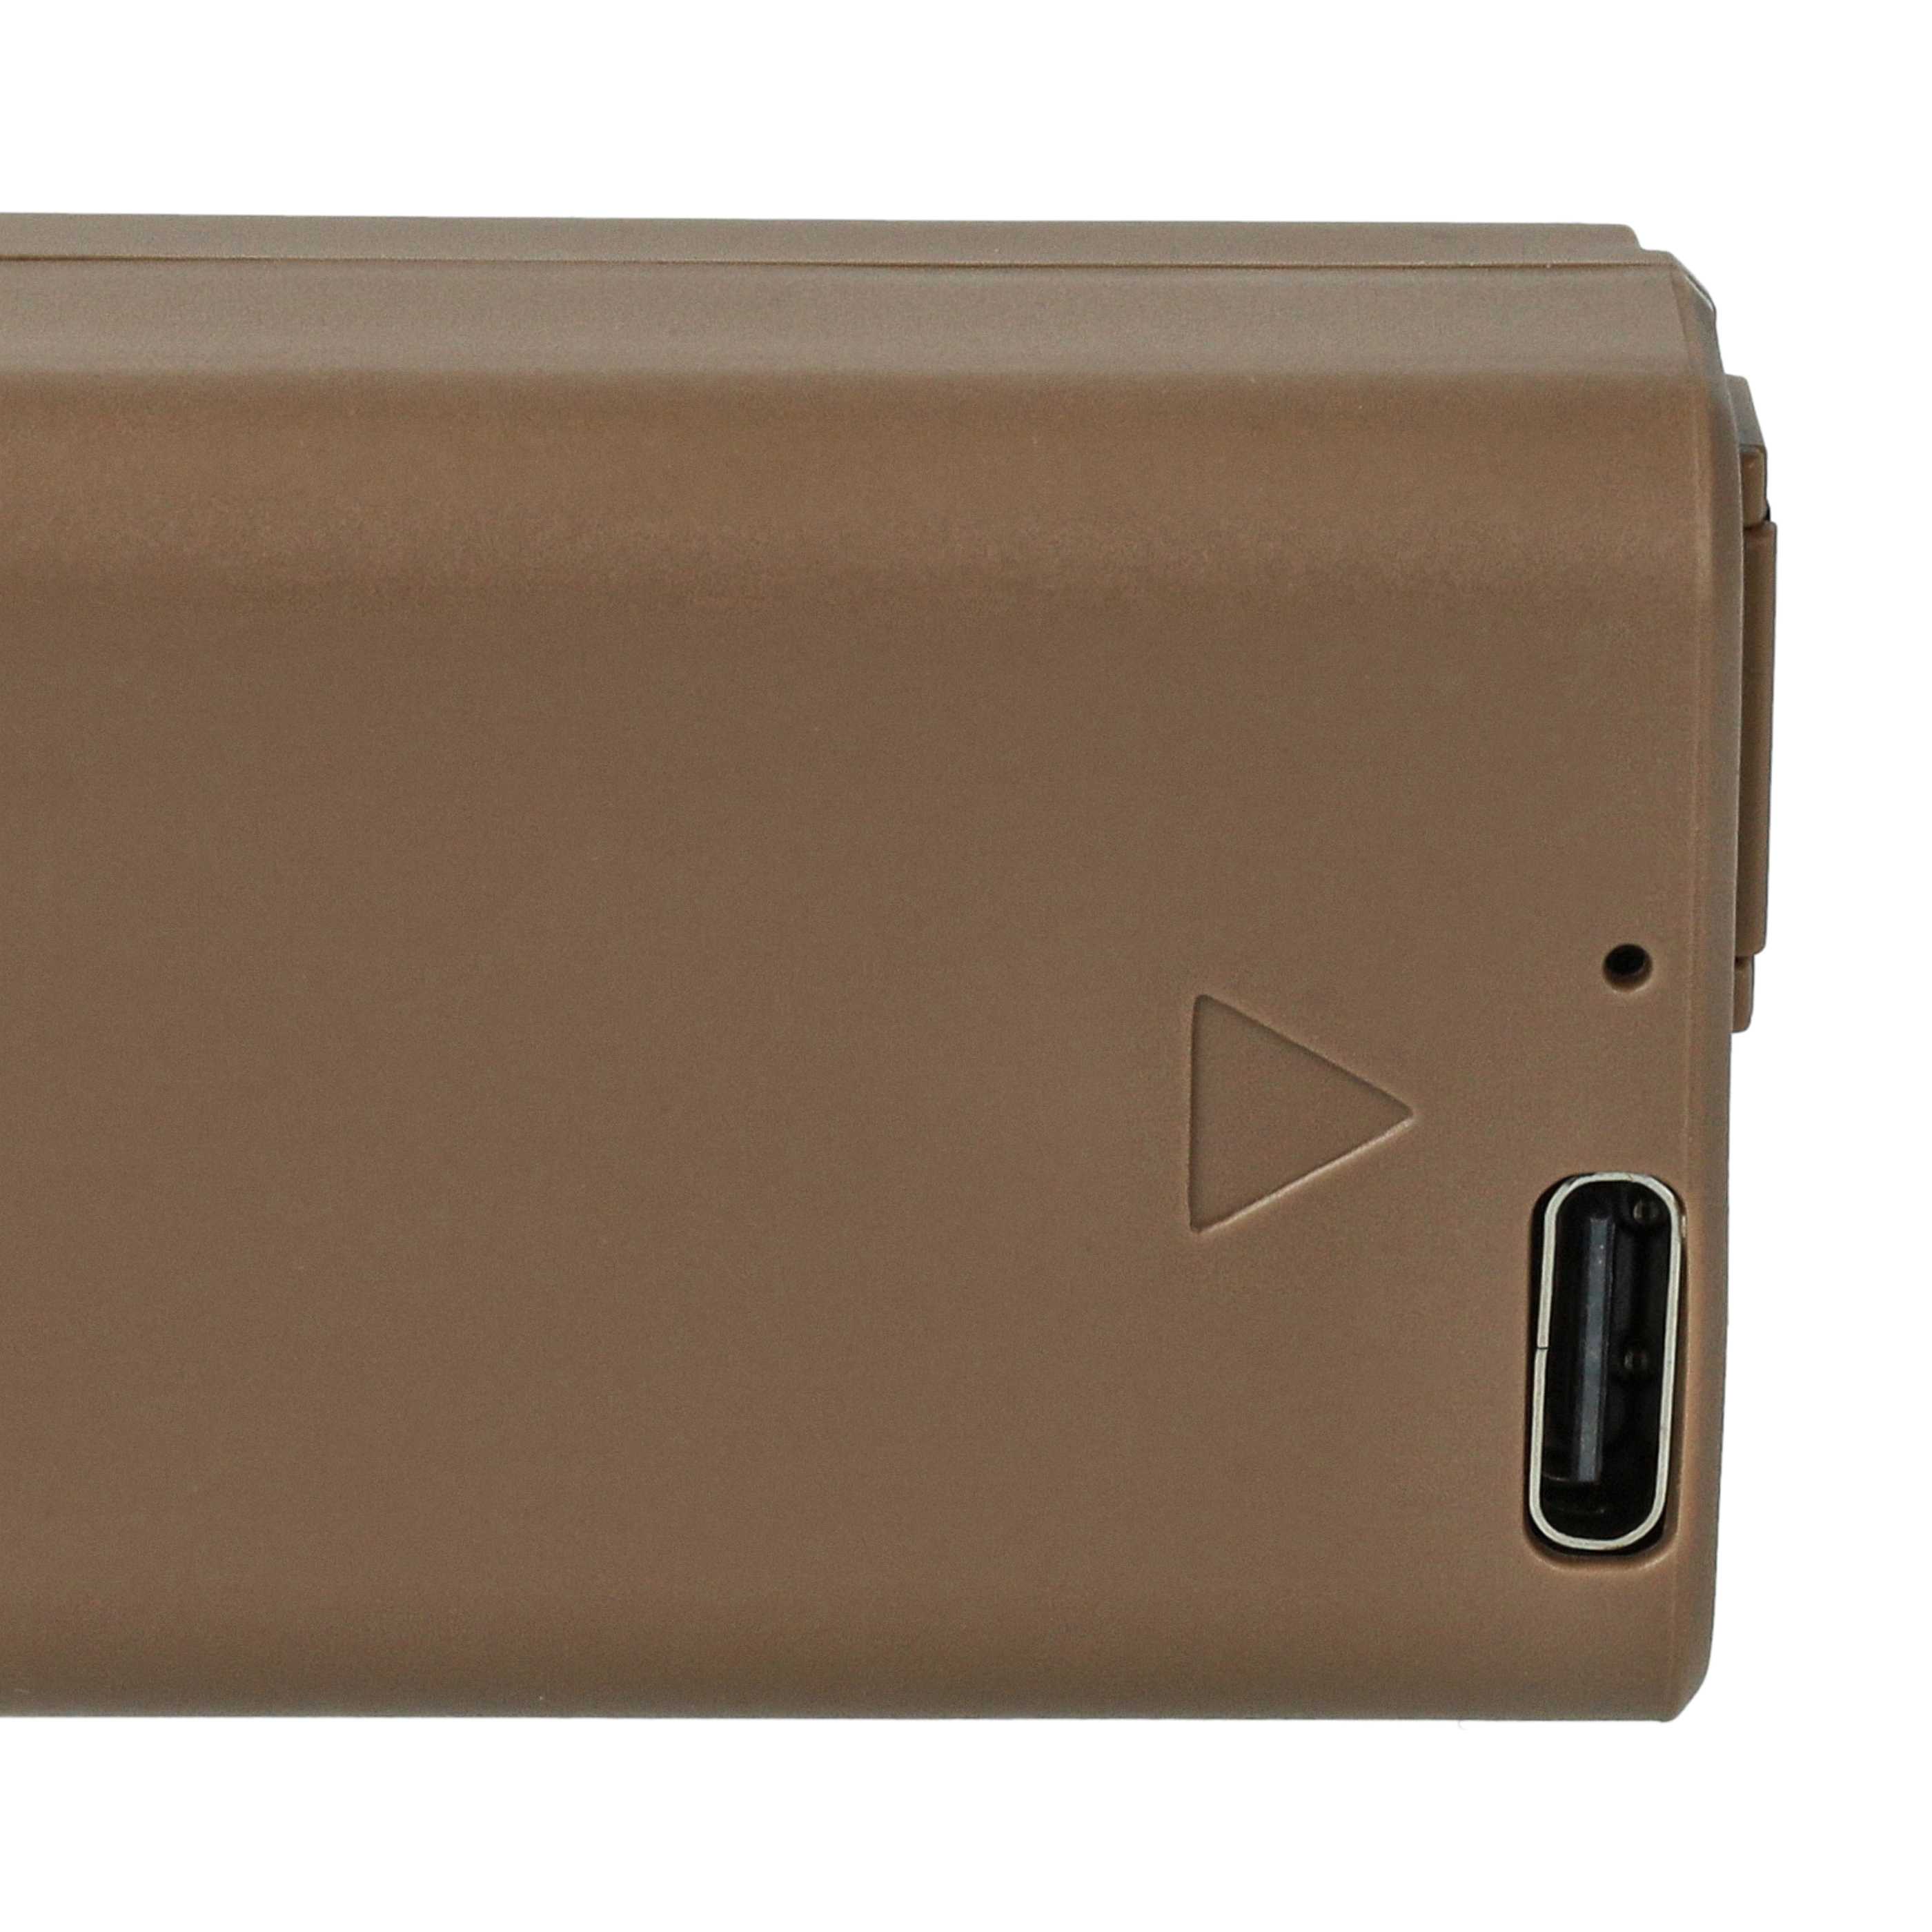 Batterie remplace Sony NP-FW50 pour appareil photo - 1030mAh 7,4V Li-ion - USB-C